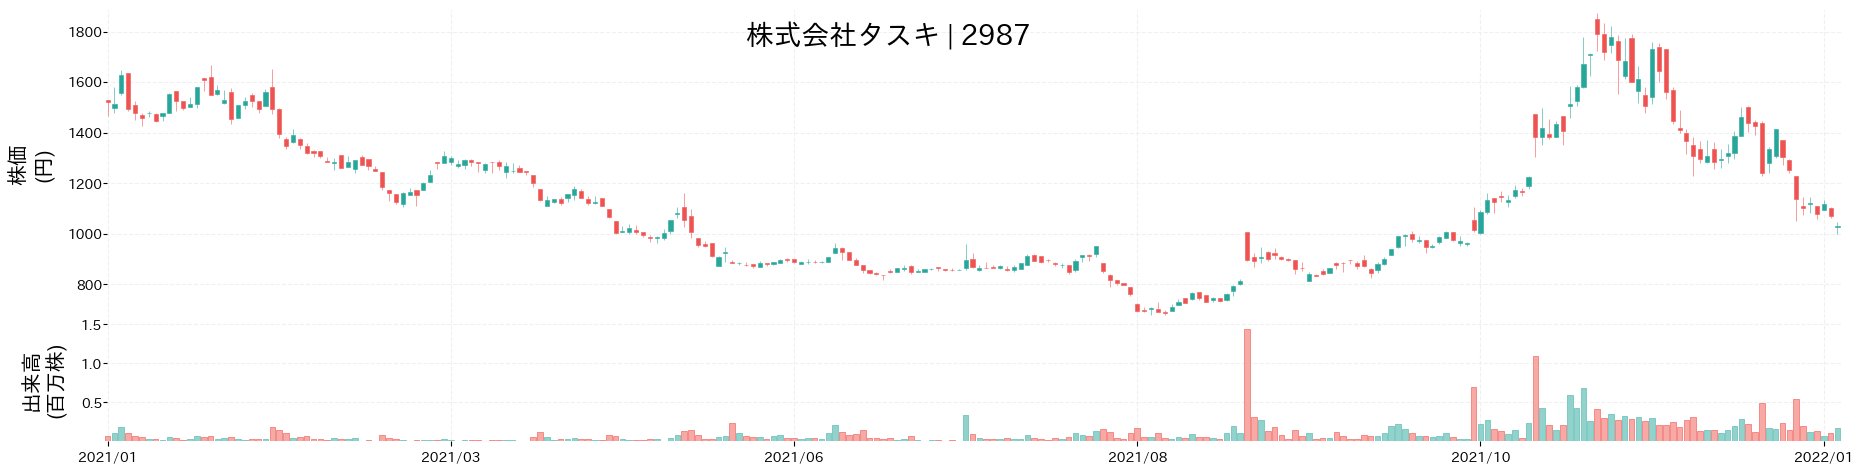 タスキの株価推移(2021)